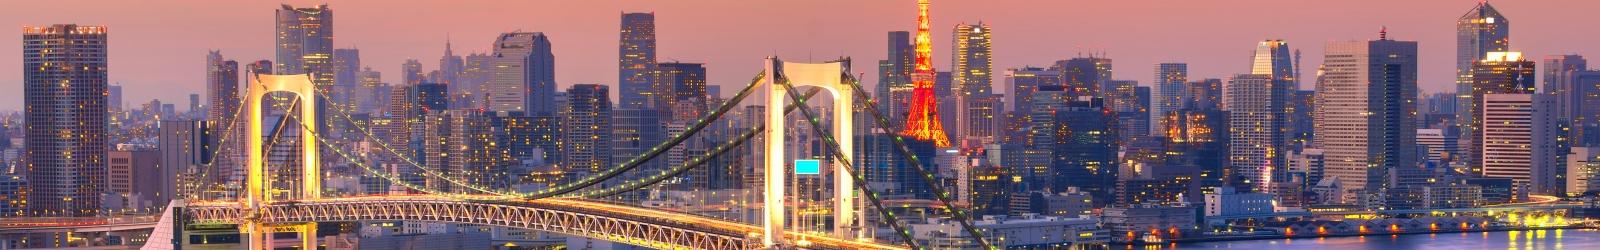 Cosa fare a Tokyo: 10 attività da non perdere | Turisanda